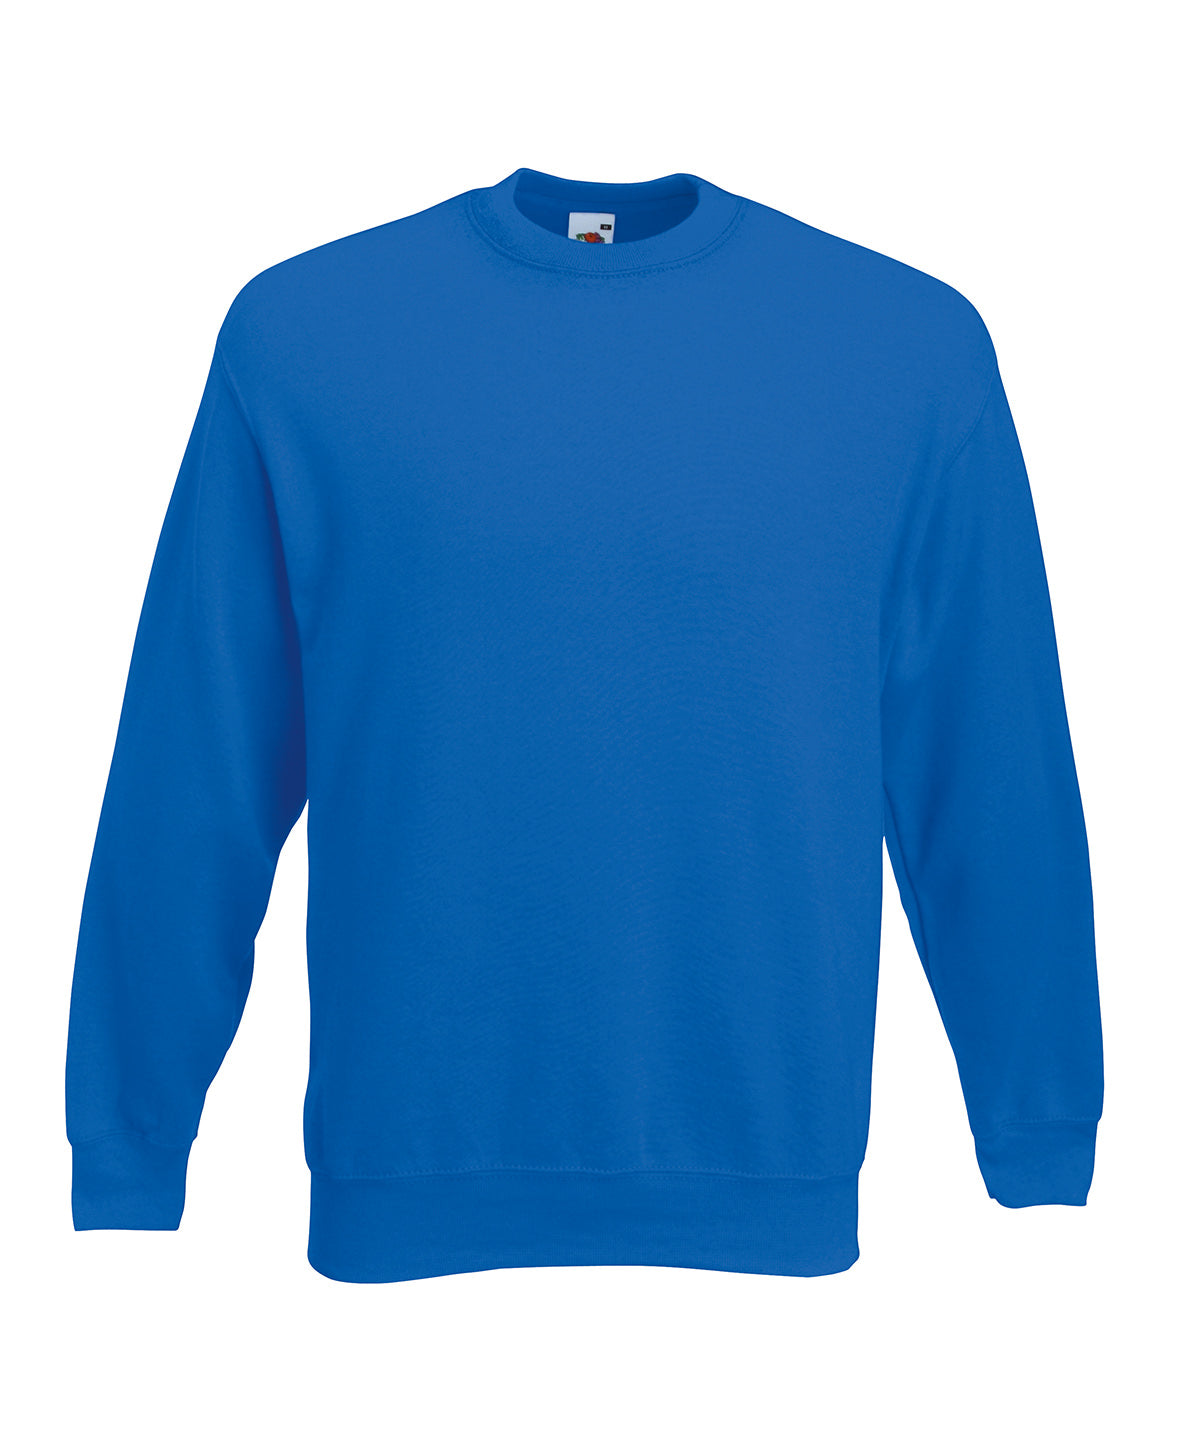 Personalised Sweatshirts - Burgundy Fruit of the Loom Premium 70/30 set-in sweatshirt